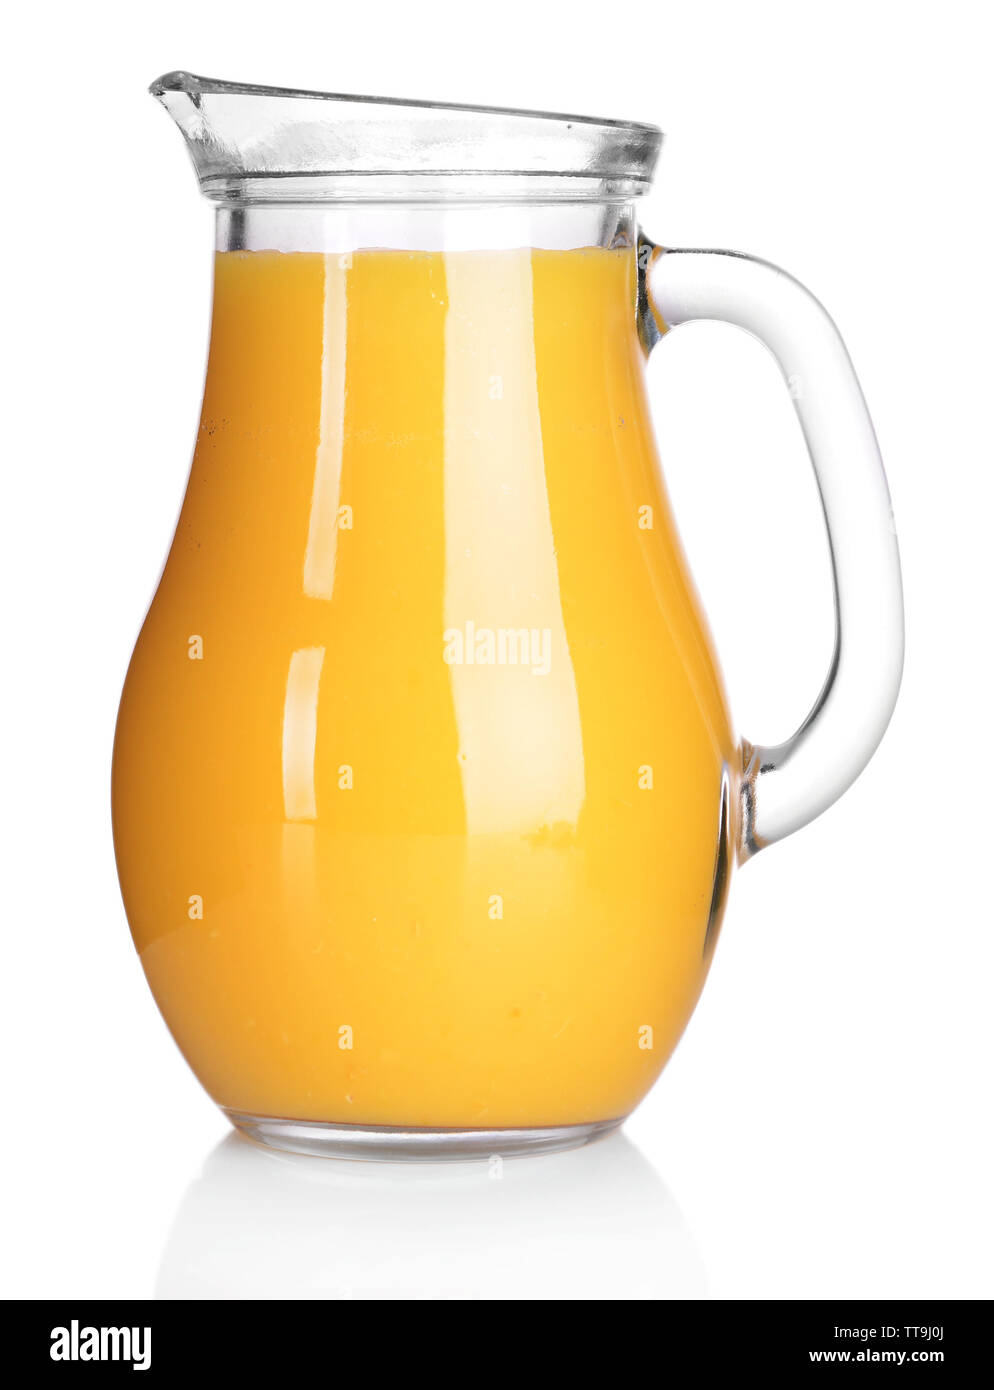 Pitcher of orange juice isolated on white Stock Photo - Alamy